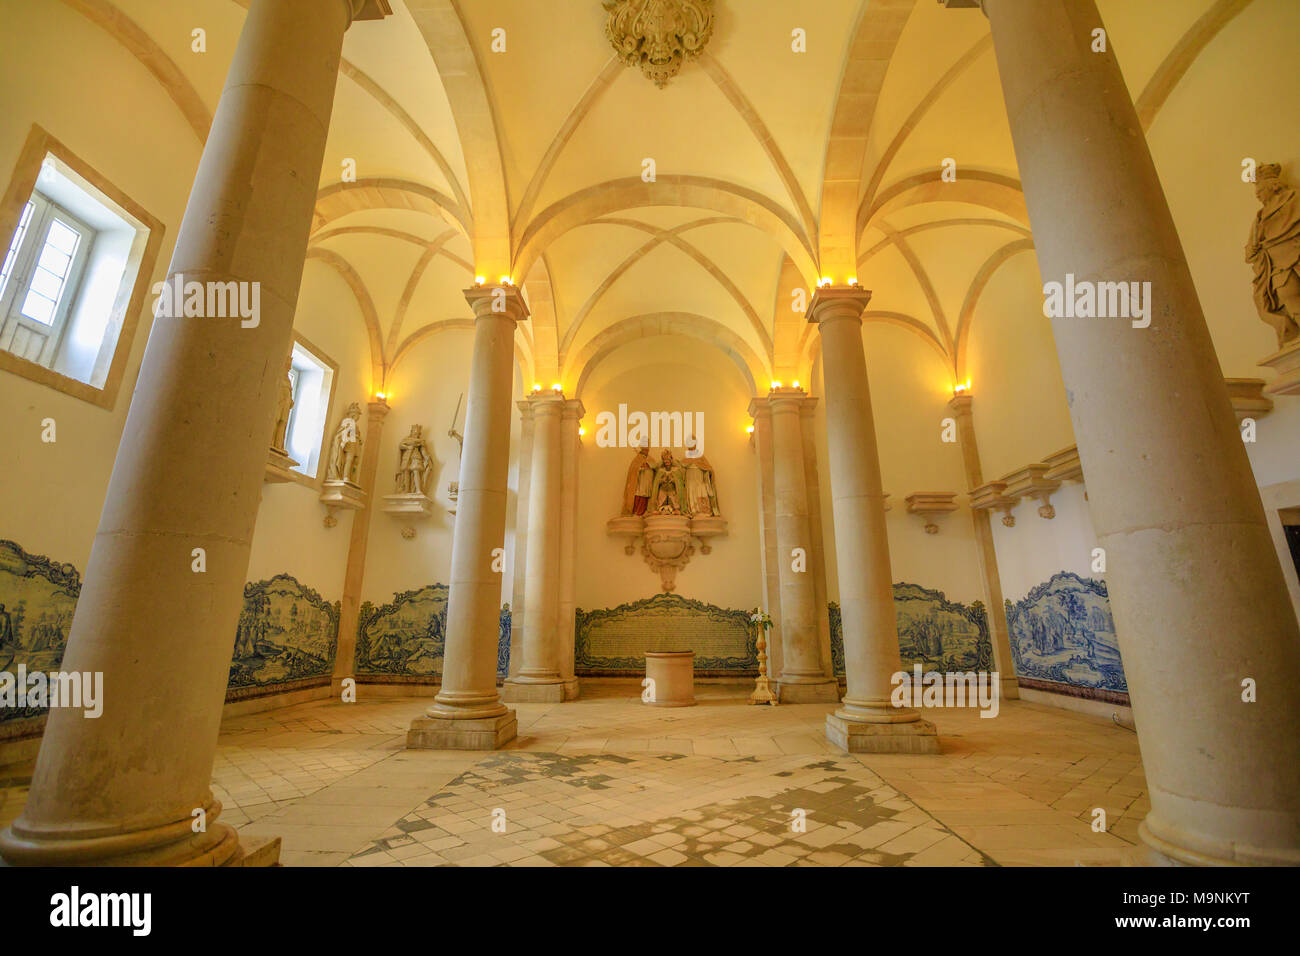 Alcobaca, Portugal - 15 de agosto de 2017: Sala dos Reis o la Sala de los reyes en el monasterio de Alcobaca o Mosteiro de Santa Maria de Alcobaca en Alcobaca, Portugal. Patrimonio de la Unesco y el lugar muy popular. Foto de stock